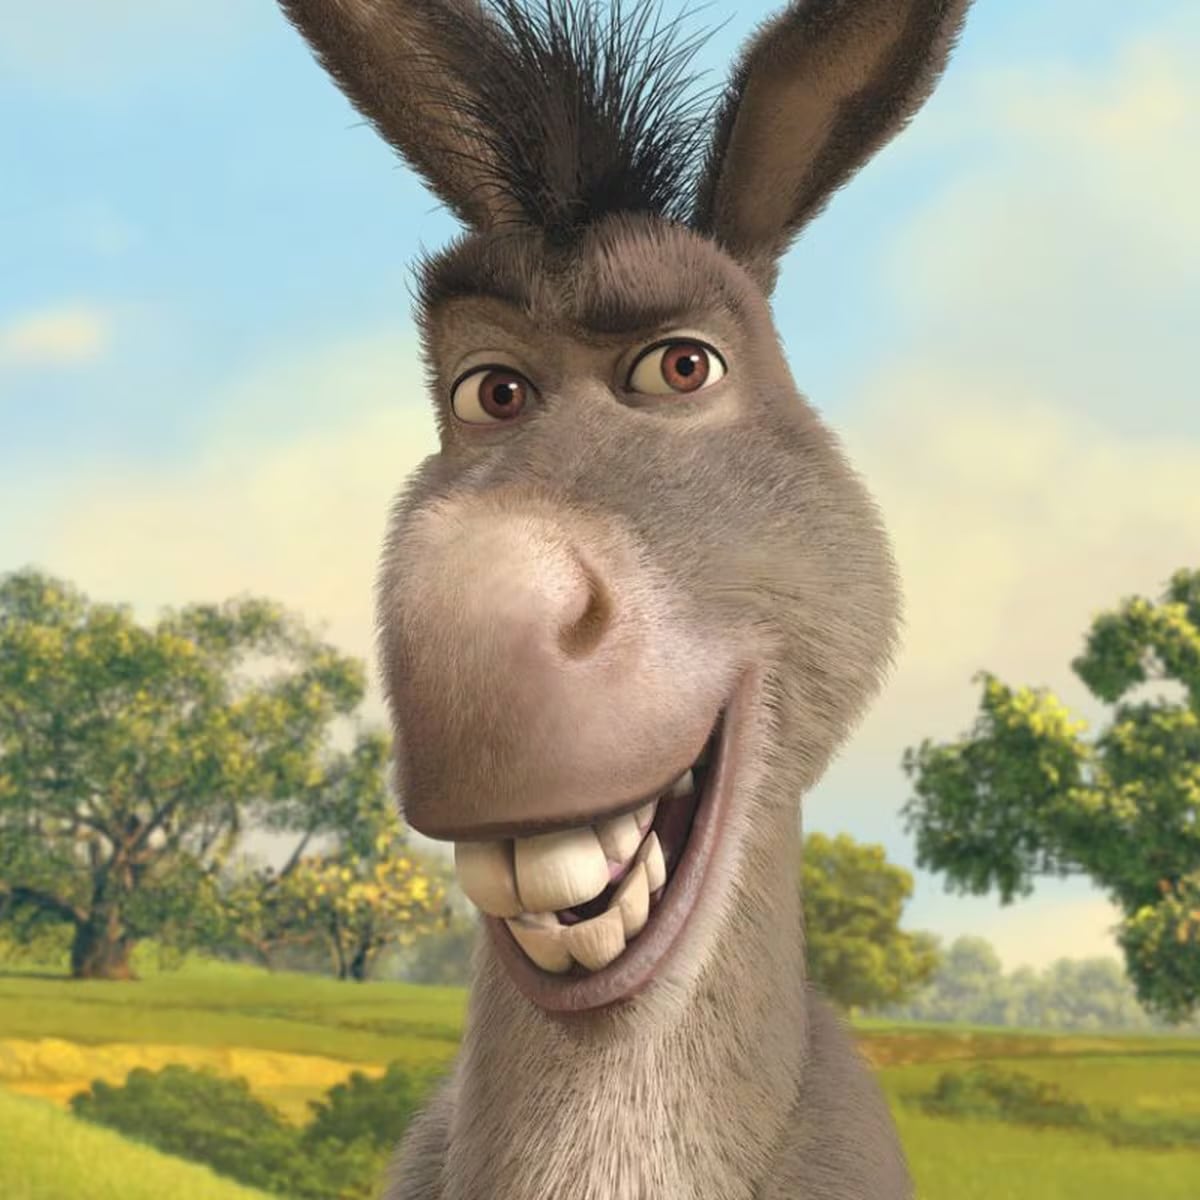 El burro de Shrek tendrá su propia película spin-off; ¿Eugenio Derbez estará en doblaje latino?